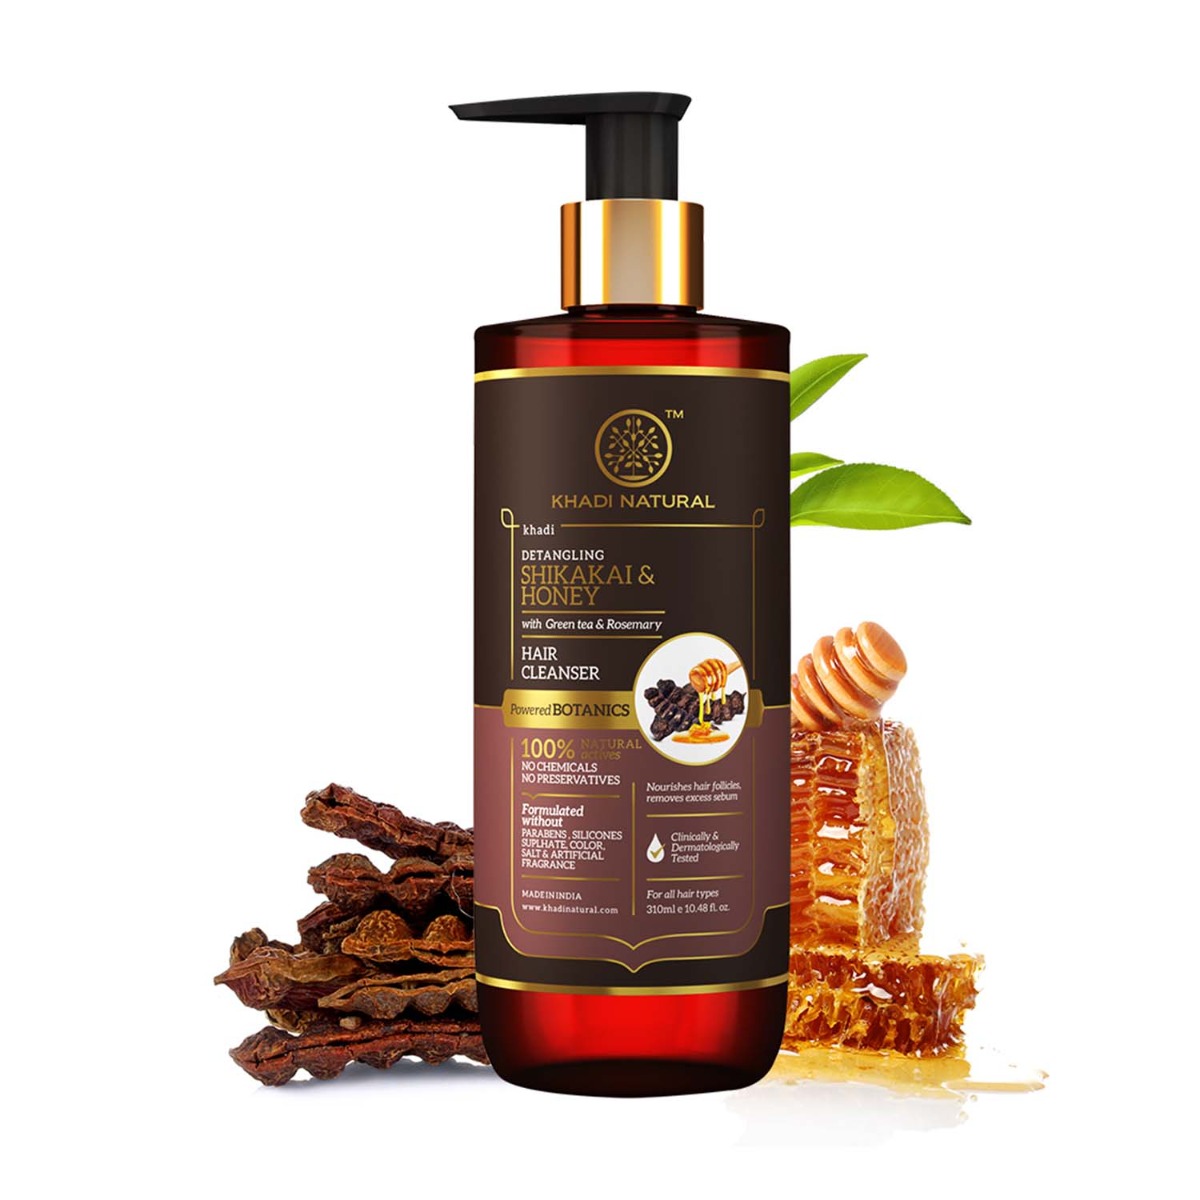 Khadi Natural Shikakai & Honey Hair Cleanser-powered Botanics, 310ml